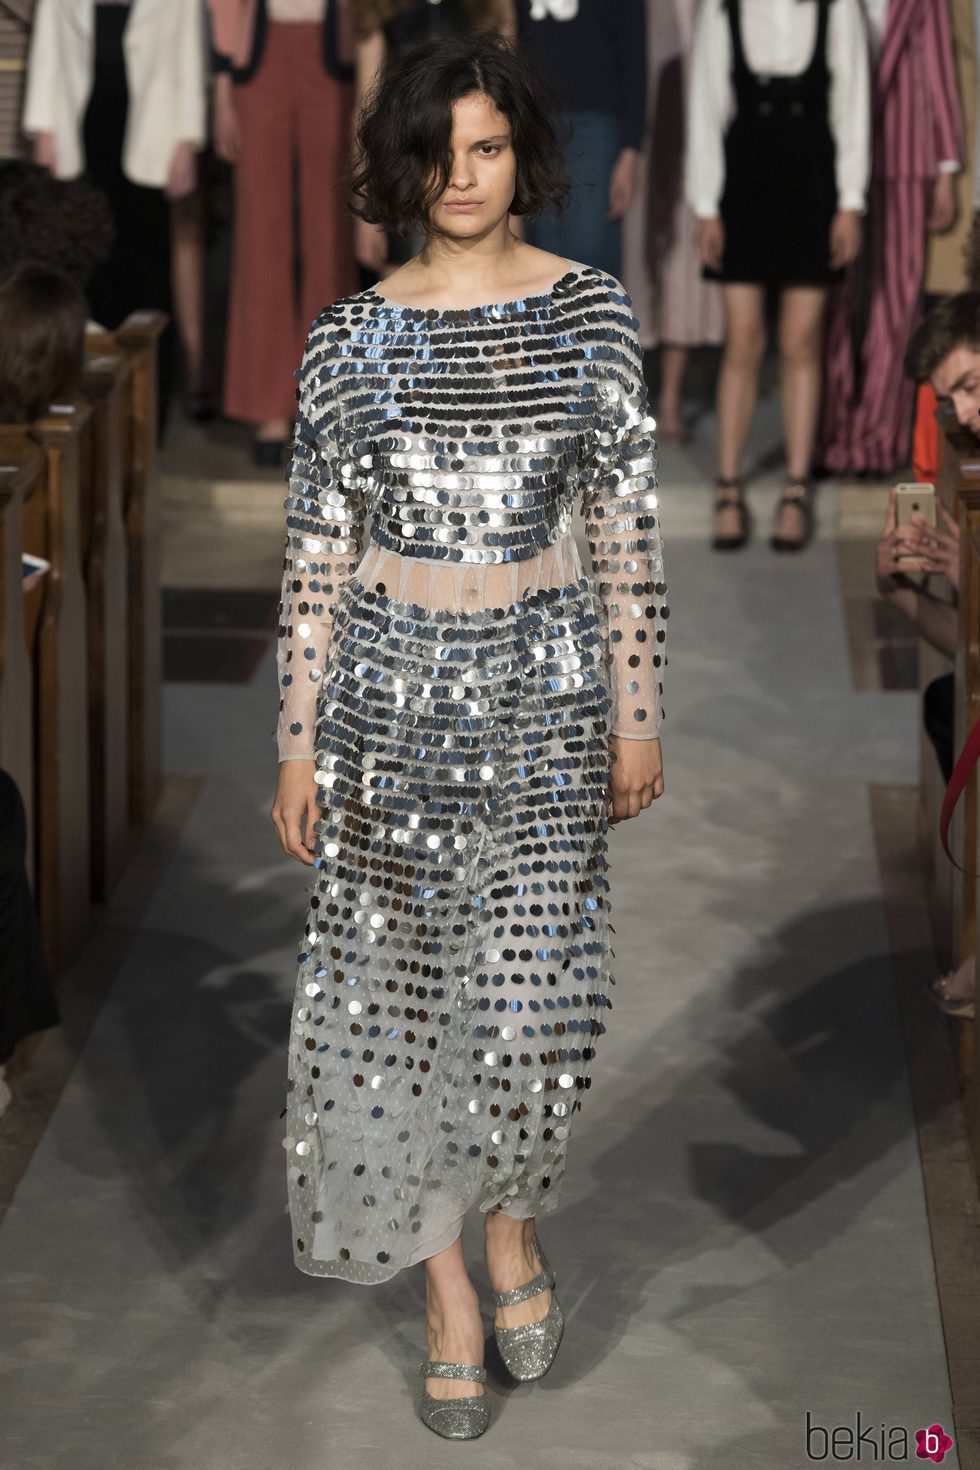 Vestido plateado de la colección verano 2017 de Alexa Chung presentada en Londres